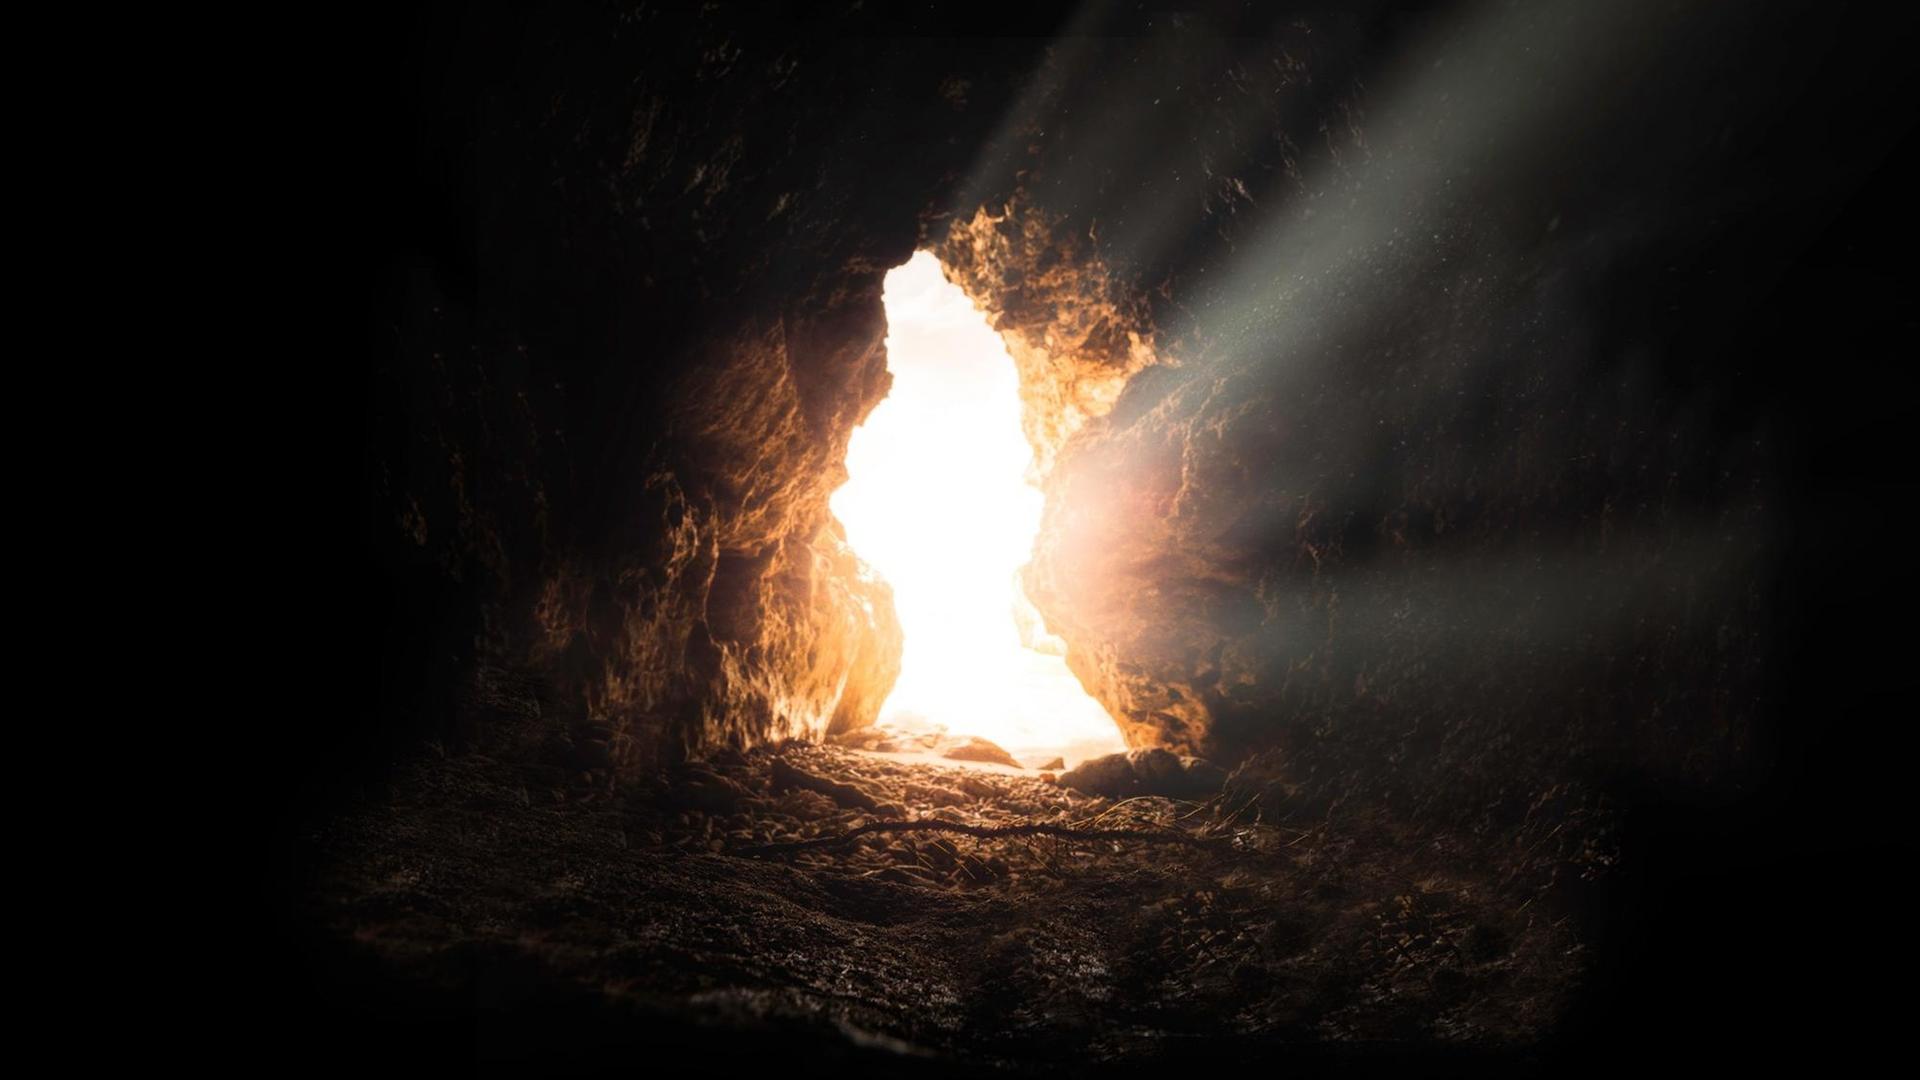 Eingang einer einsamen Höhle, Aufnahme aus dem Inneren. Ein heller Lichtstrahl strömt hinein.